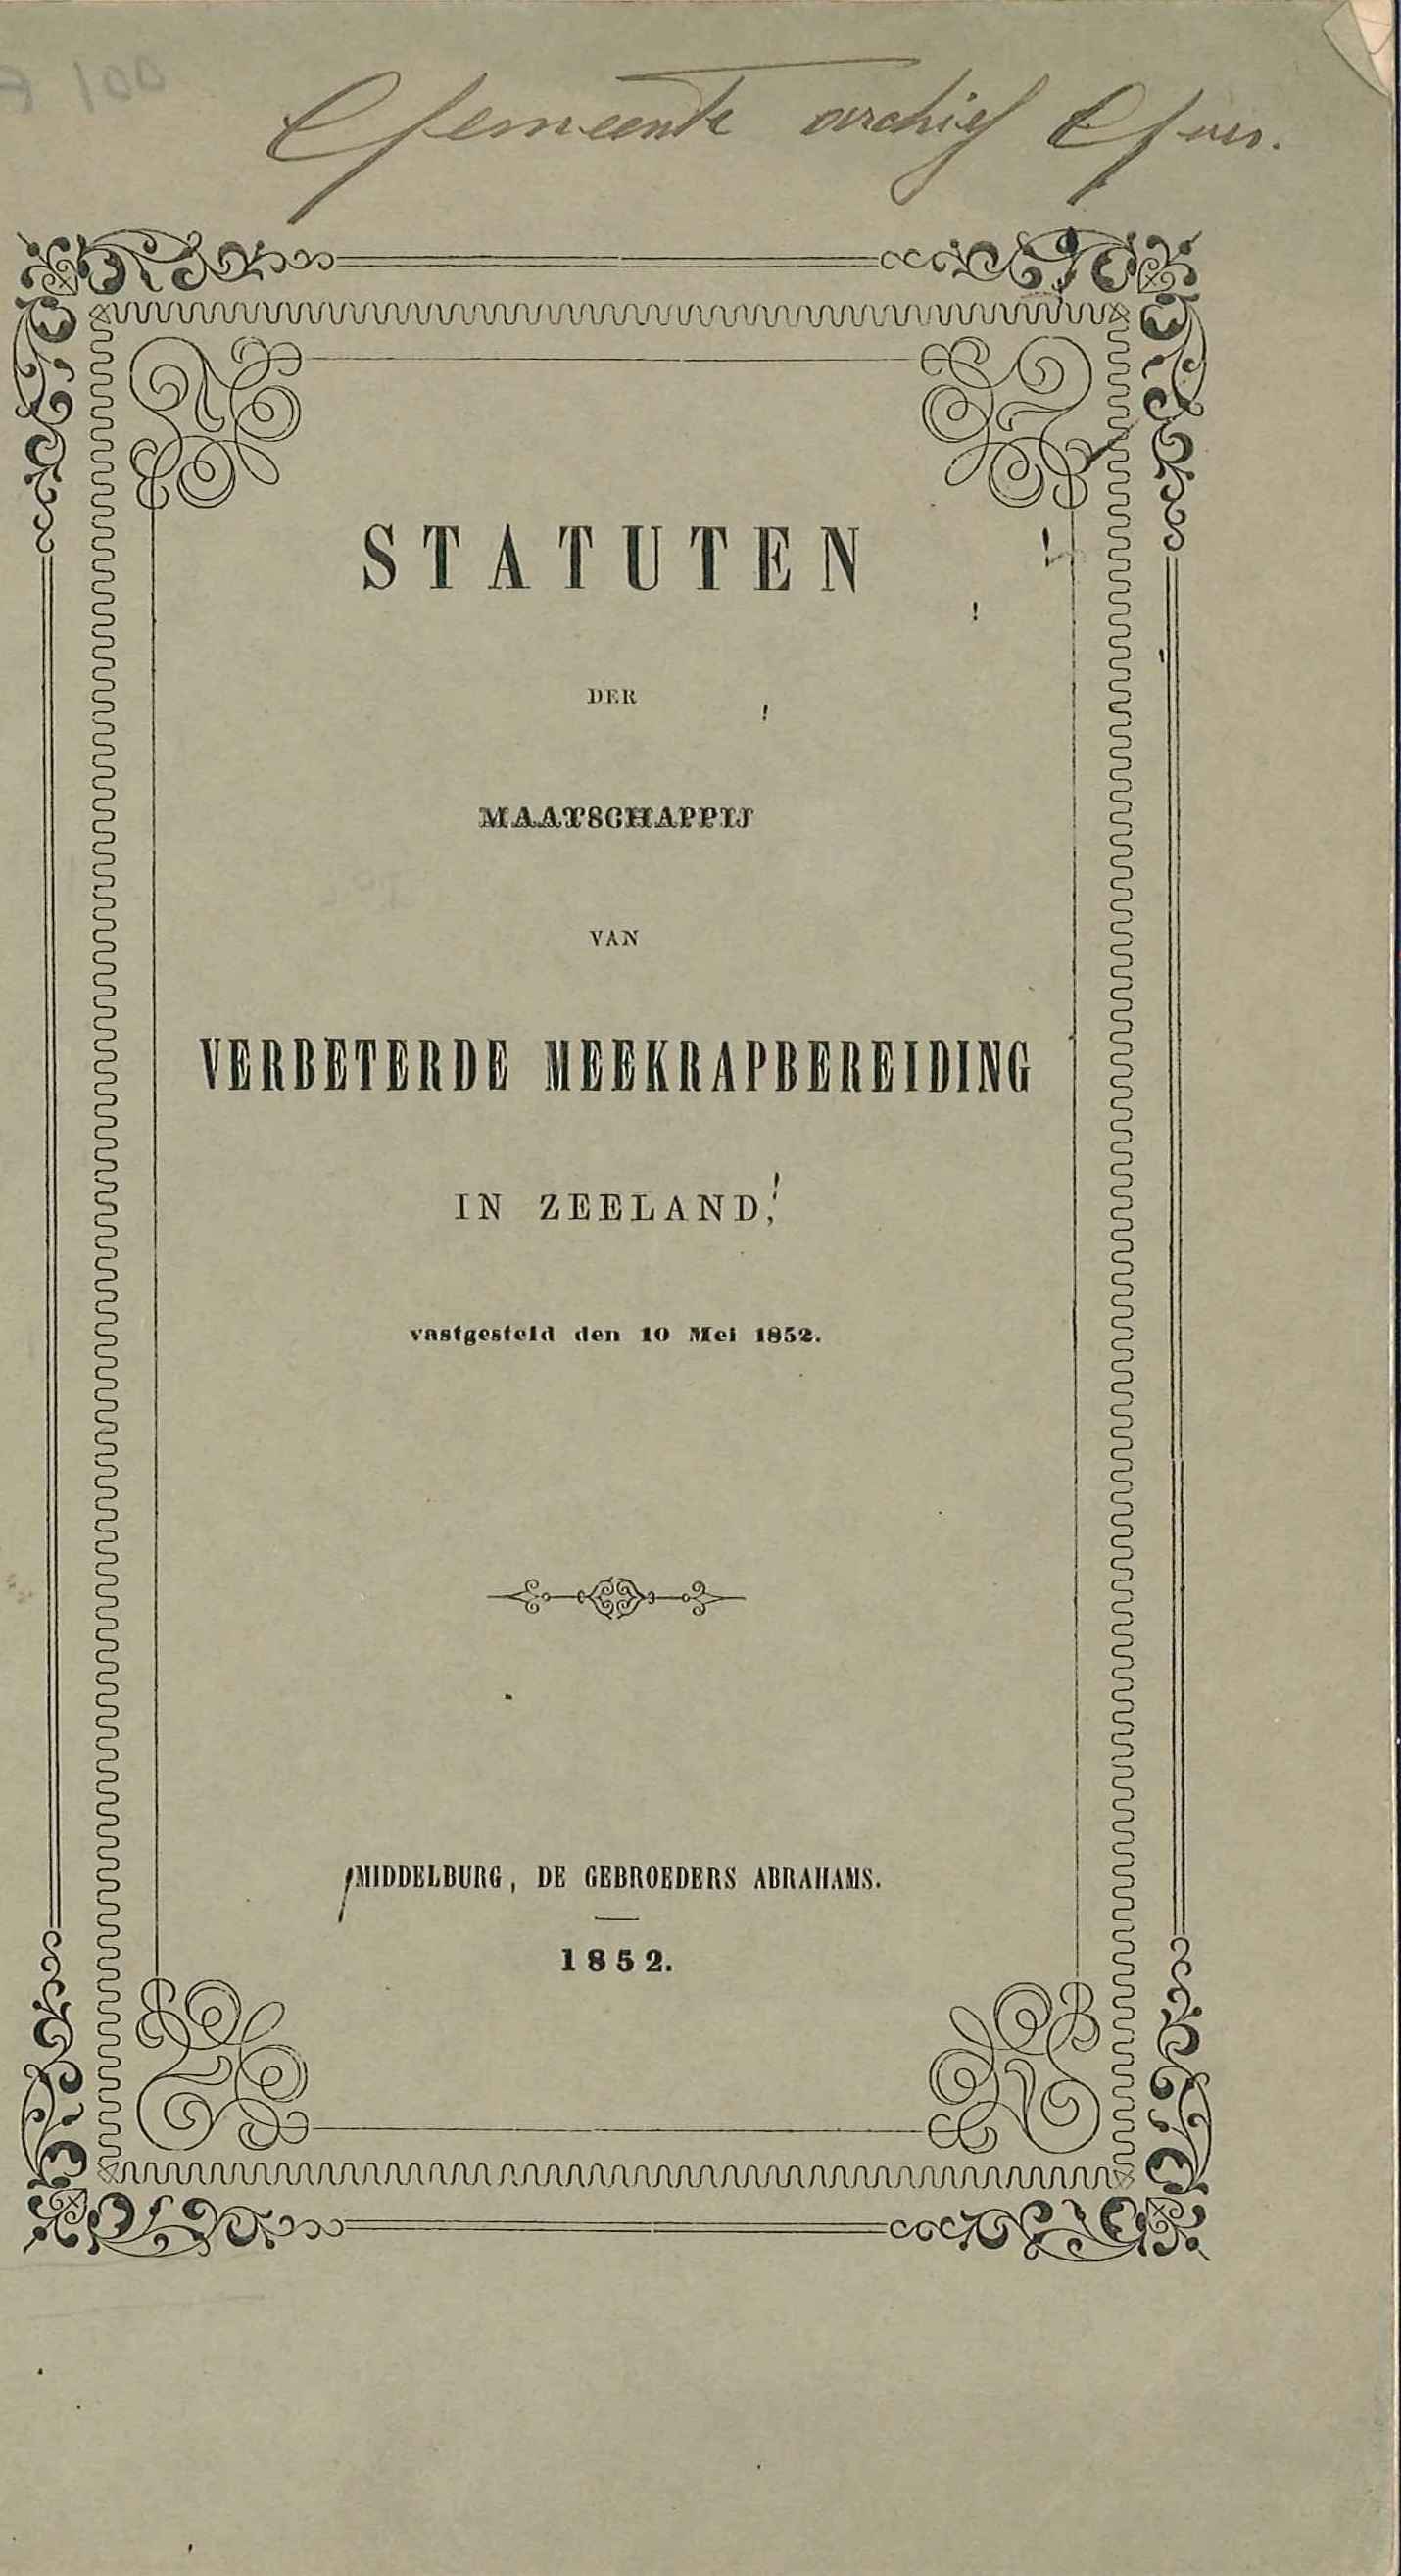 Statuten van de Maatschappij van verbeterde meekrapbereiding in Zeeland, Middelburg 1852. GAG.HB.